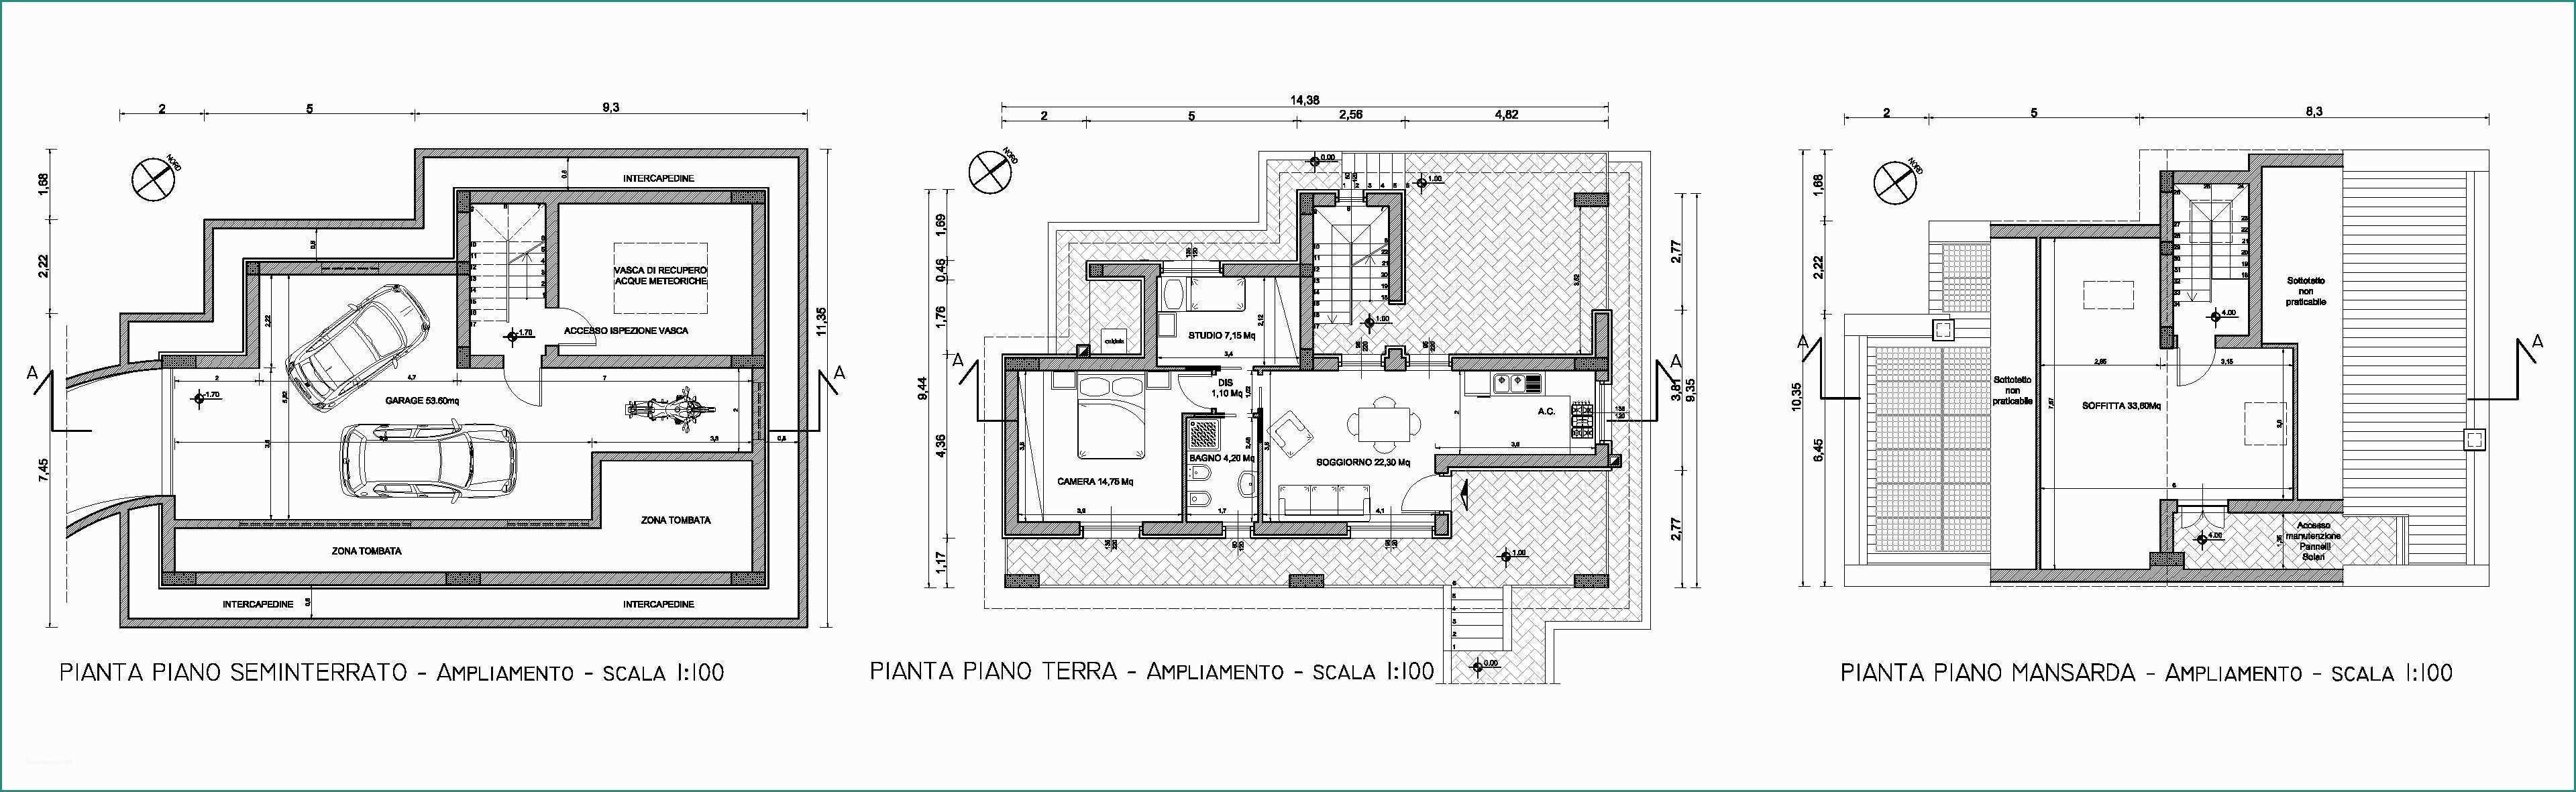 Planimetria Villetta Unifamiliare E Piano Casa Ampliamento Villa Ai Castelli Romani Architetto Roma